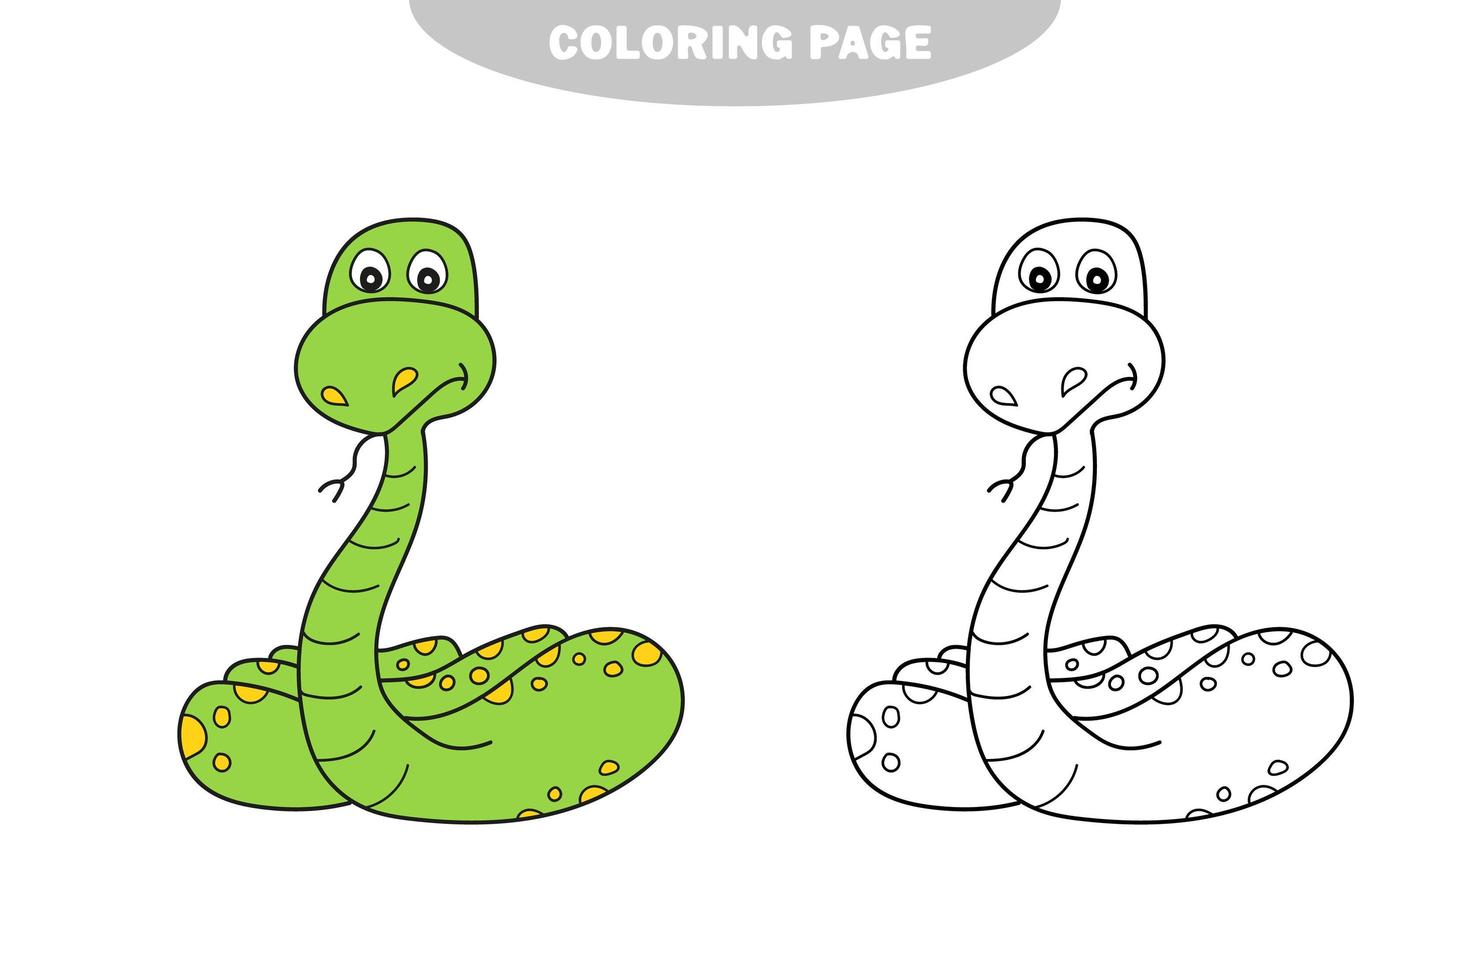 enkel målarbok. orm som ska färgas, målarboken vektor